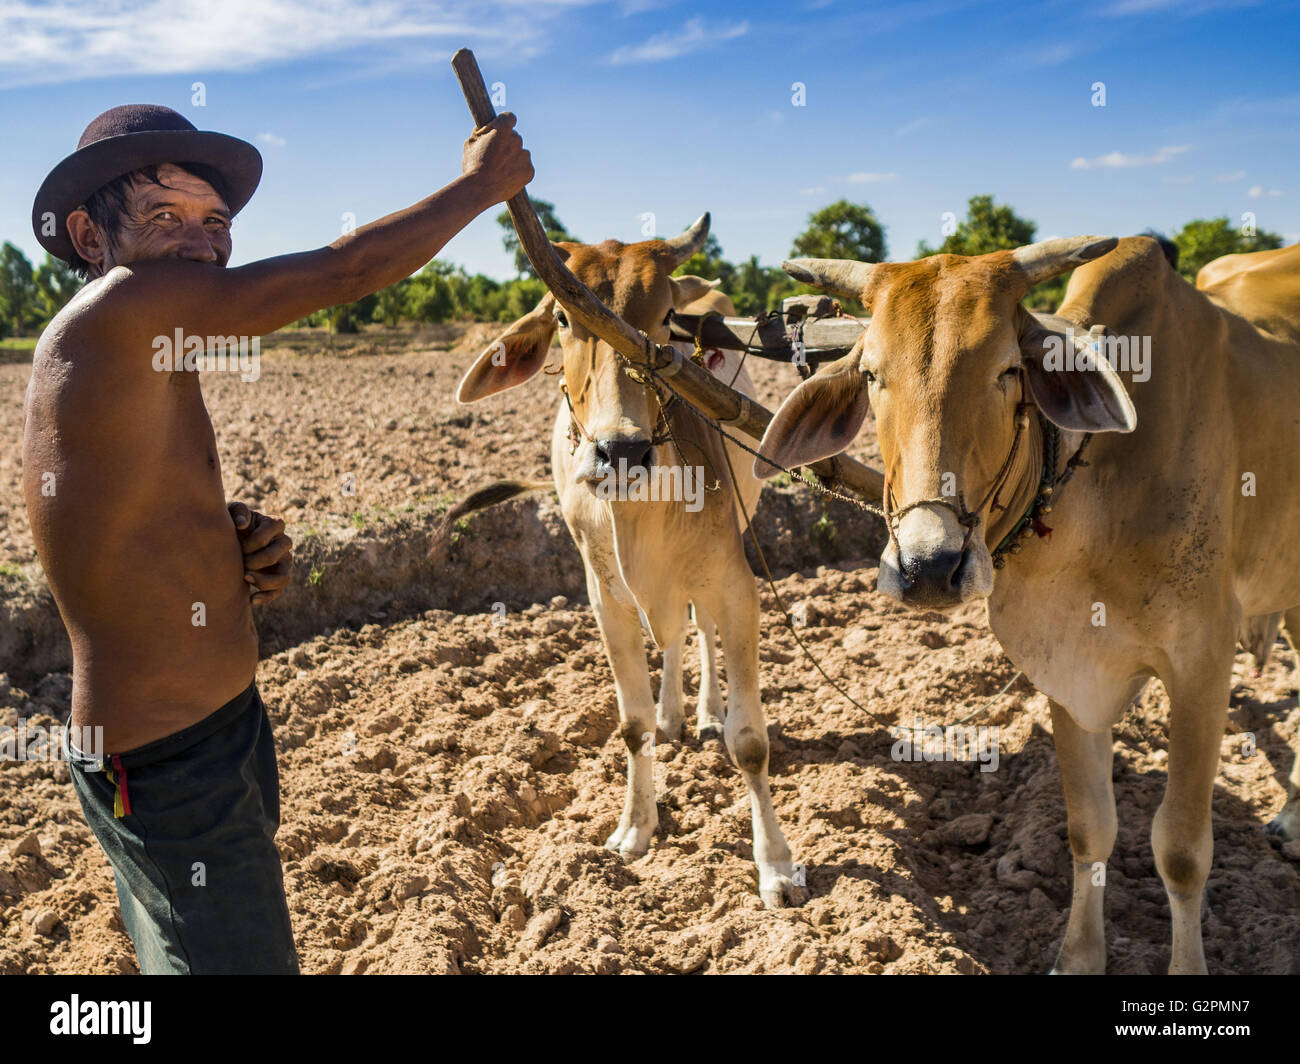 Prasat Bakong, Siem Reap, Kambodscha. 2. Juni 2016. LERN, einem kambodschanischen Bauern, sein ganzes Leben, mit einem Team von Ochsen, die er angestellt Landwirtschaft hat, bis seine landen und bereiten Sie die Felder für Pflanzen Reis in der Nähe von Seam Reap. Kambodscha ist im zweiten Jahr eines Datensatzes erschütternde Dürre, hervorgerufen durch Klimawandel und die El-Niño Wettermuster. Bauern in der Gegend sagen das trockenste haben sie jemals ihre Felder. Sie sagten, sie sind Pflanzen, weil sie keine Wahl aber, wenn sie Regenzeit kommt nicht, oder wenn es wie letztes Jahr sehr kurzen Regenzeit verlieren sie ihre Ernte. (Kredit Im Stockfoto